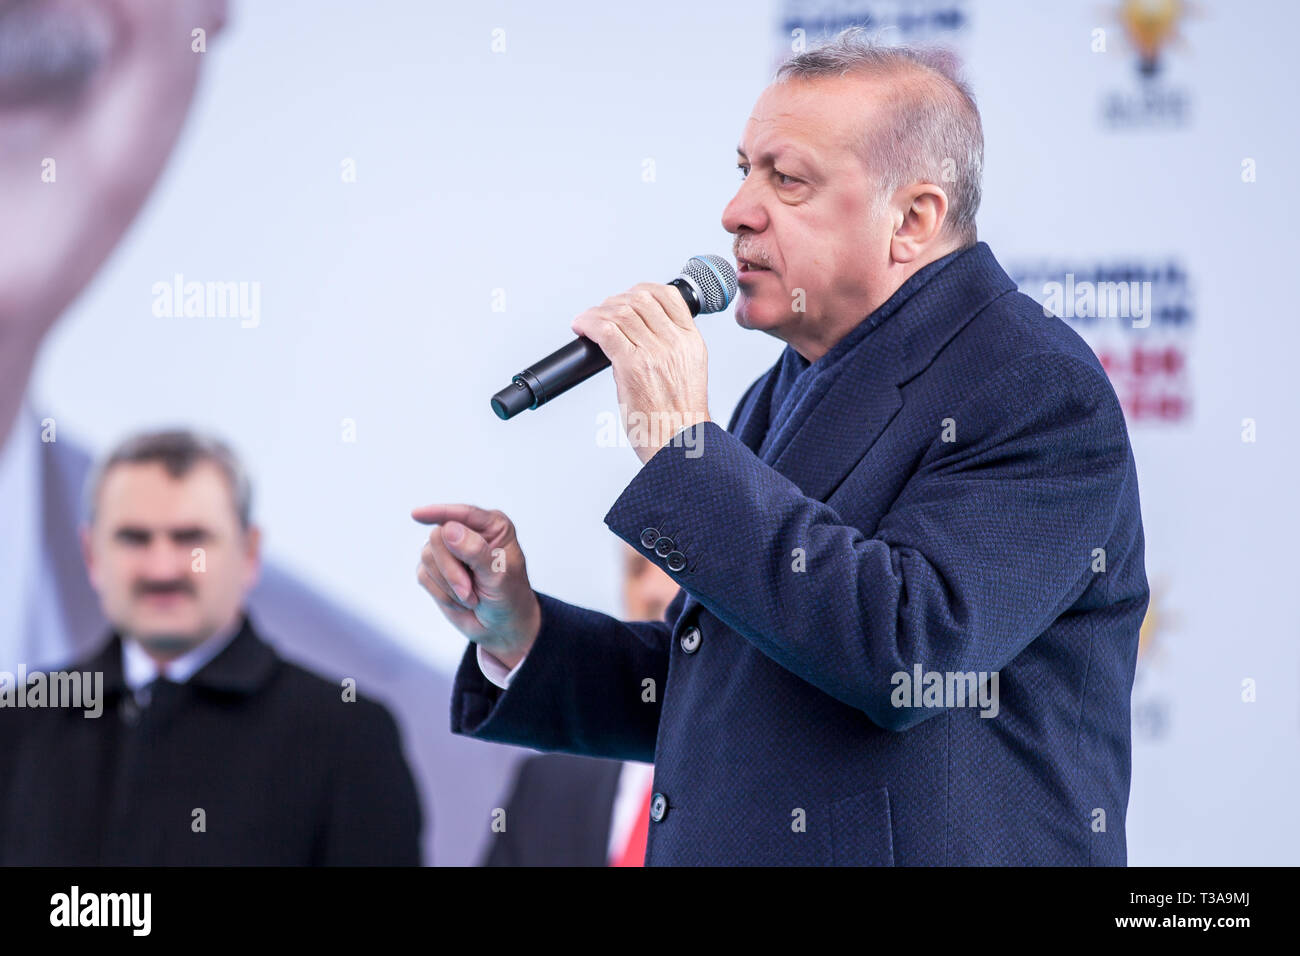 Le Président turc, Recep Tayyip Erdogan, s'exprime à l'Assemblée électorale locale Mars 31, 30 mars 2019 Bagcilar, Istanbul - Turquie Banque D'Images